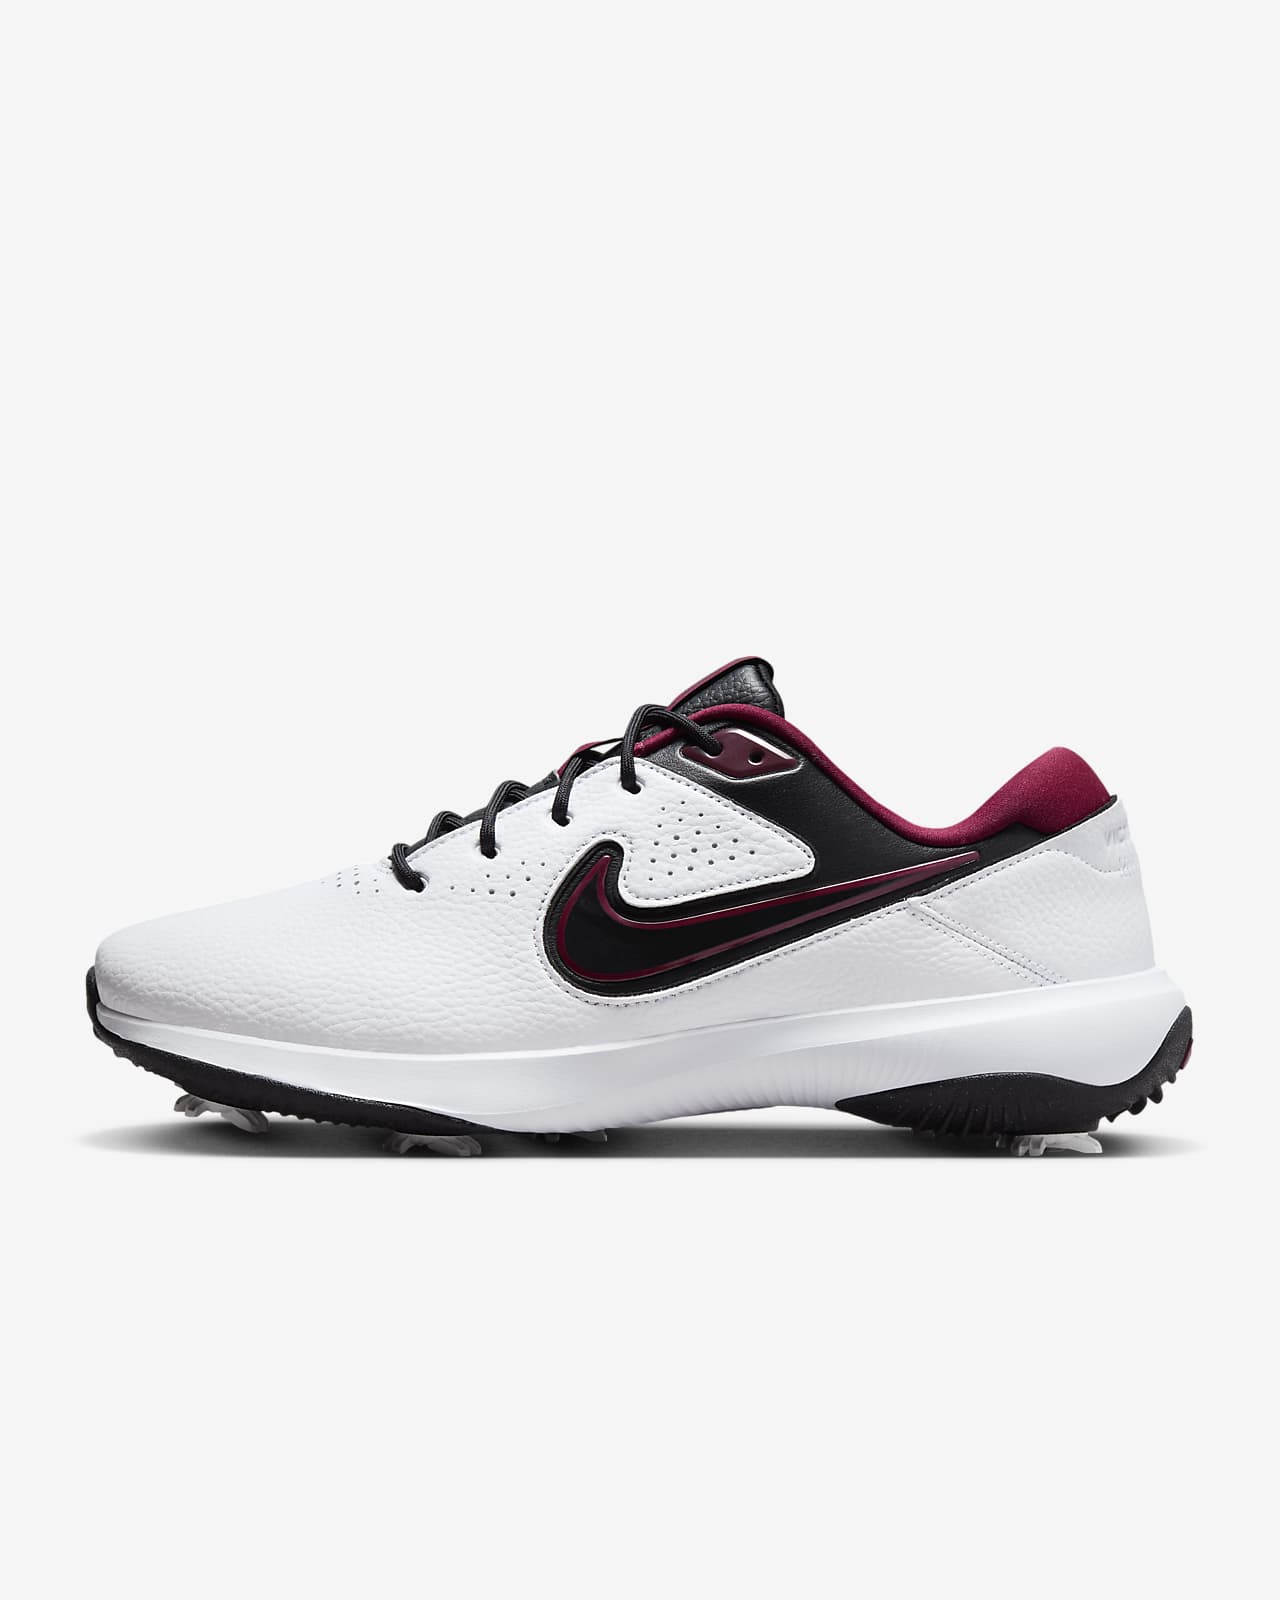 Calzado de golf para hombre (ancho) Nike Victory Pro 3